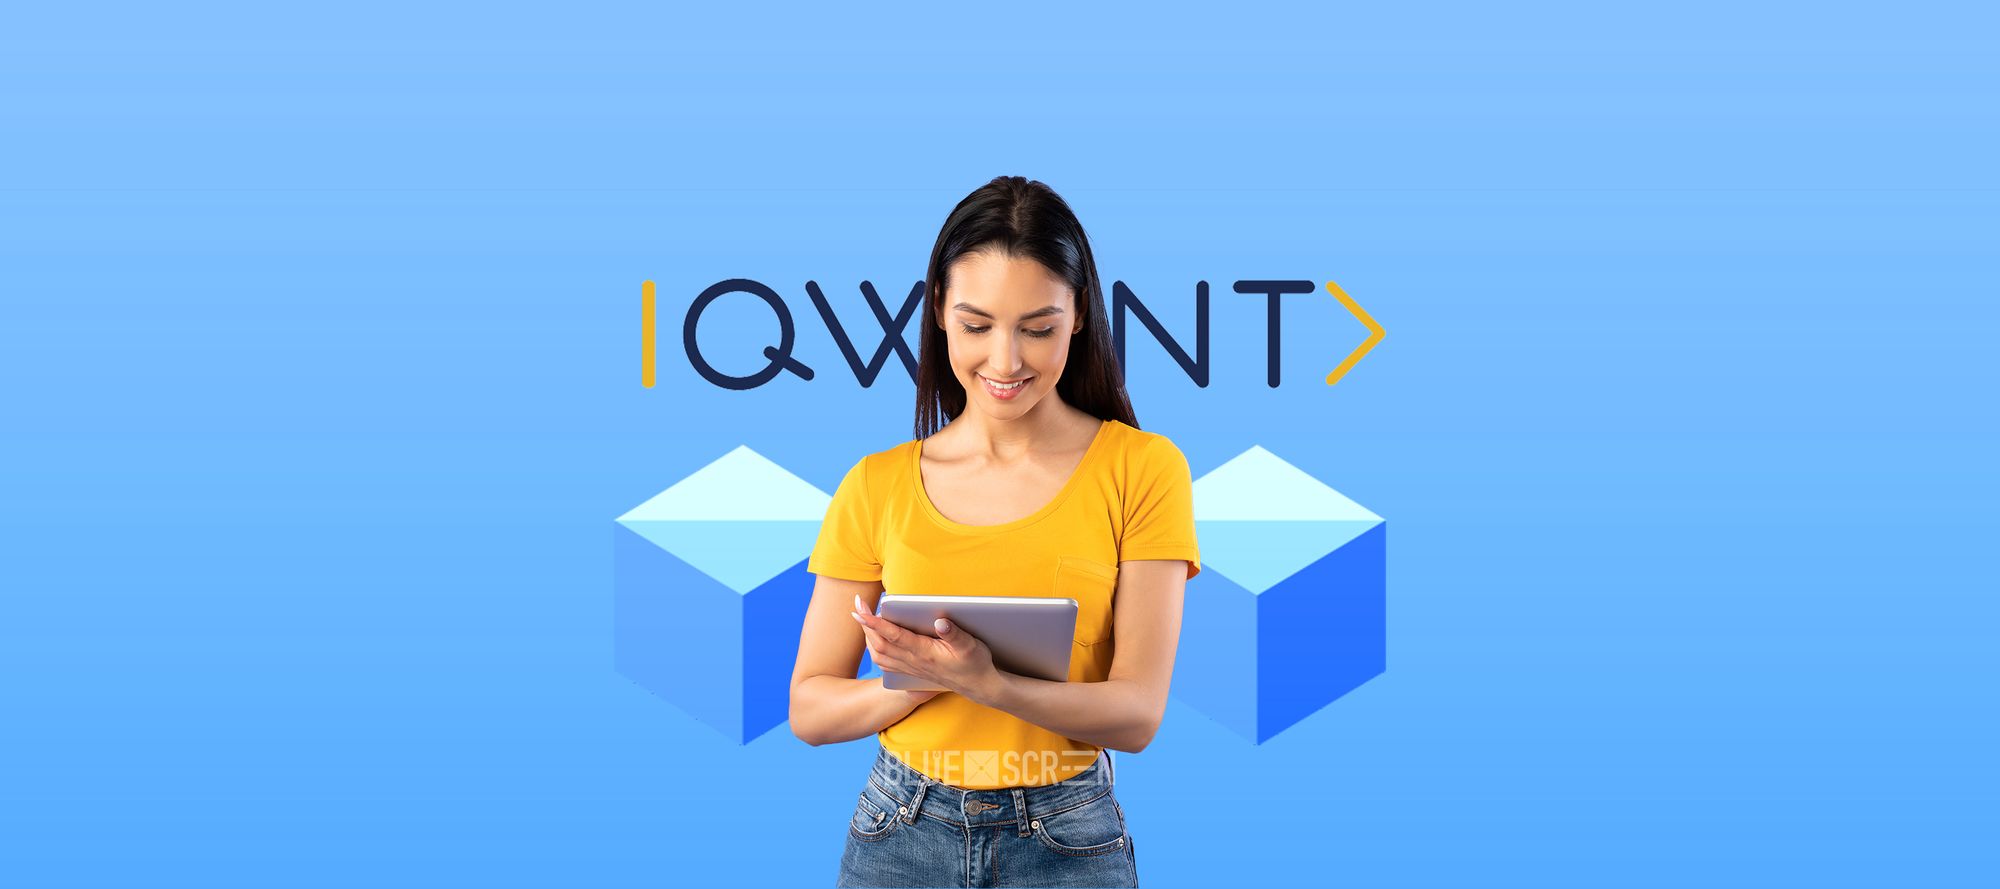 Школа программирования QWANT выделяет гранты для девушек